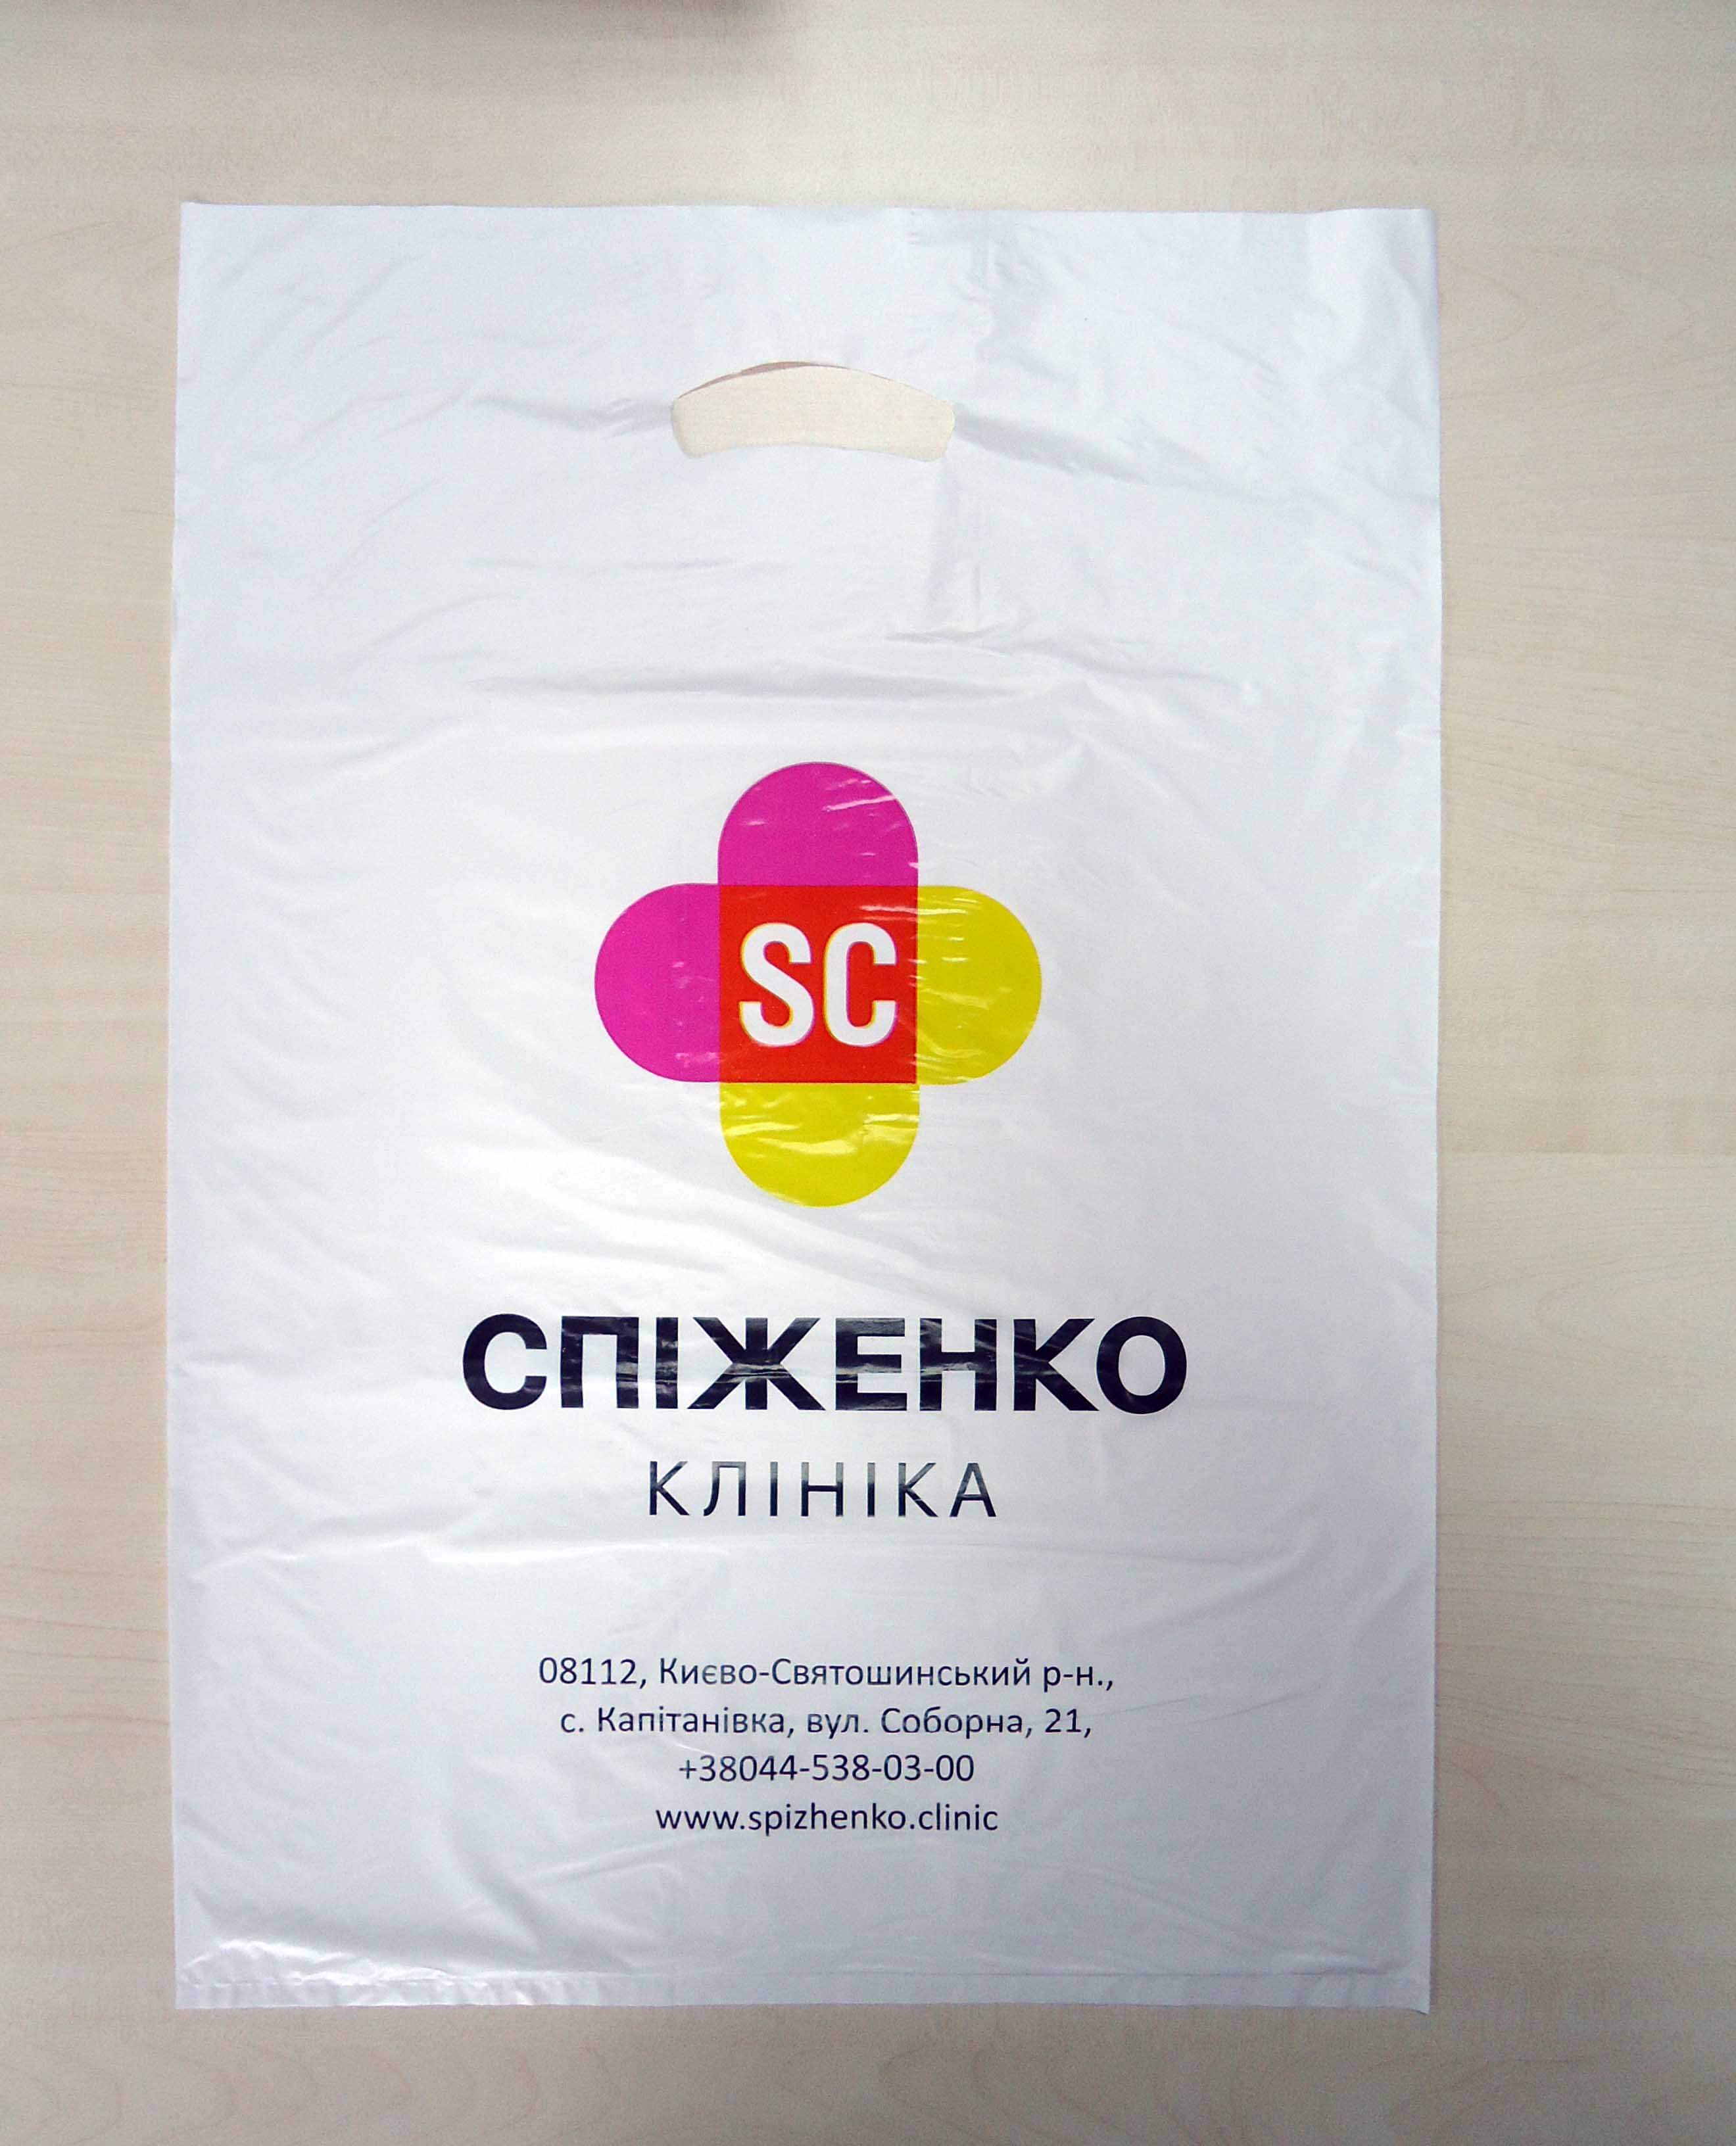 Пакет с петлевой ручкой и напечатанным логотипом Chernigov Package - Photo DSC03532